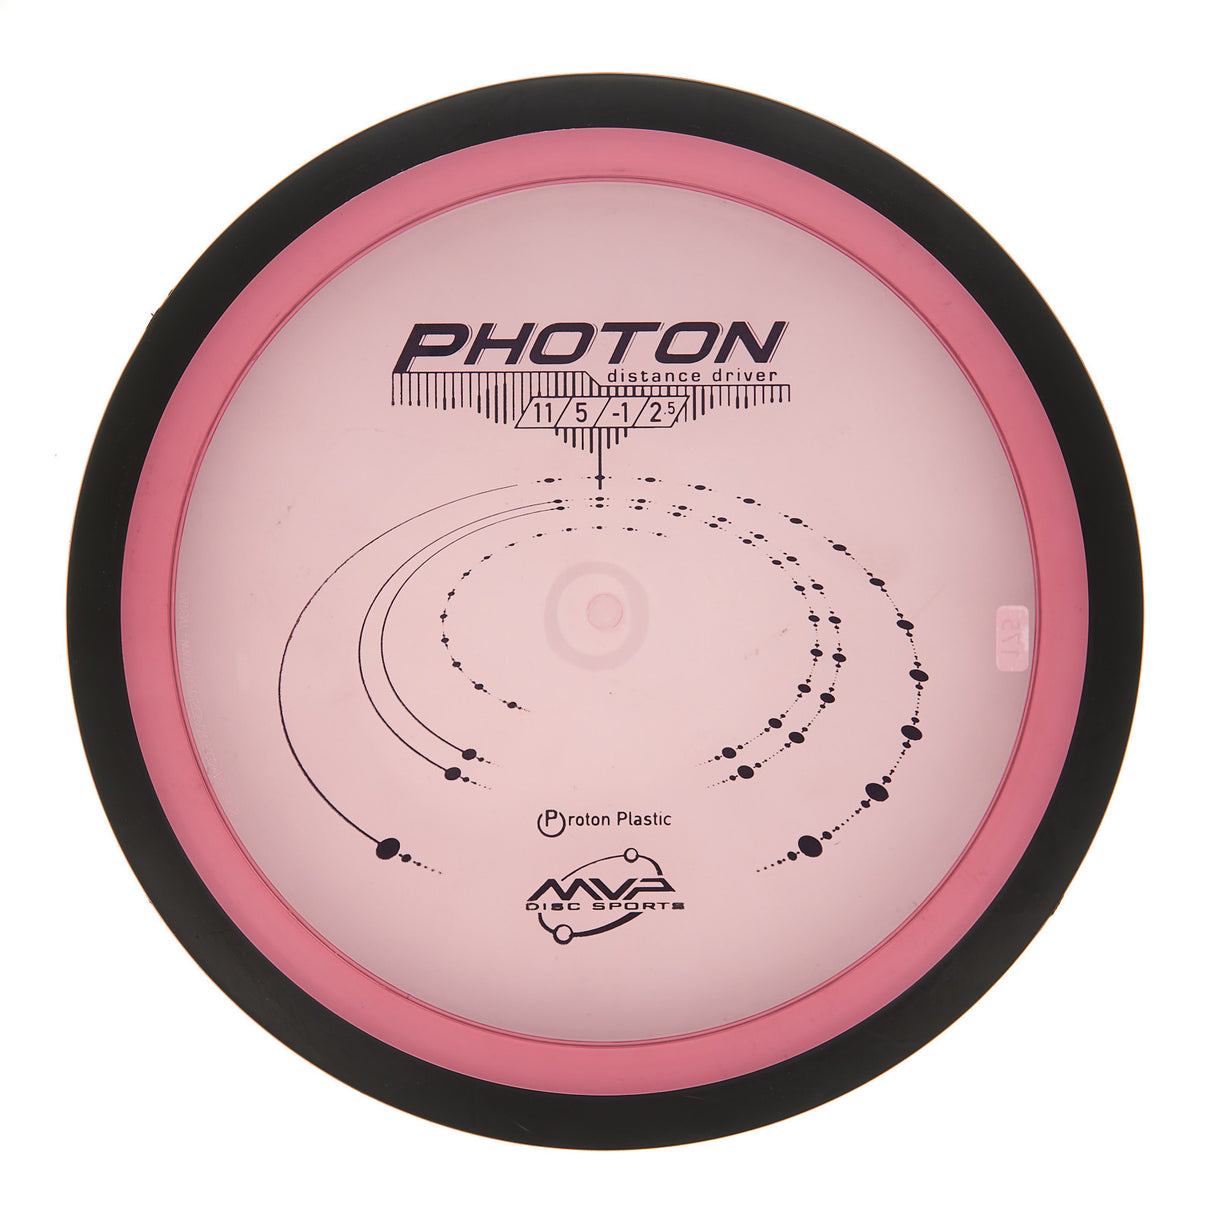 MVP Photon - Proton 176g | Style 0003